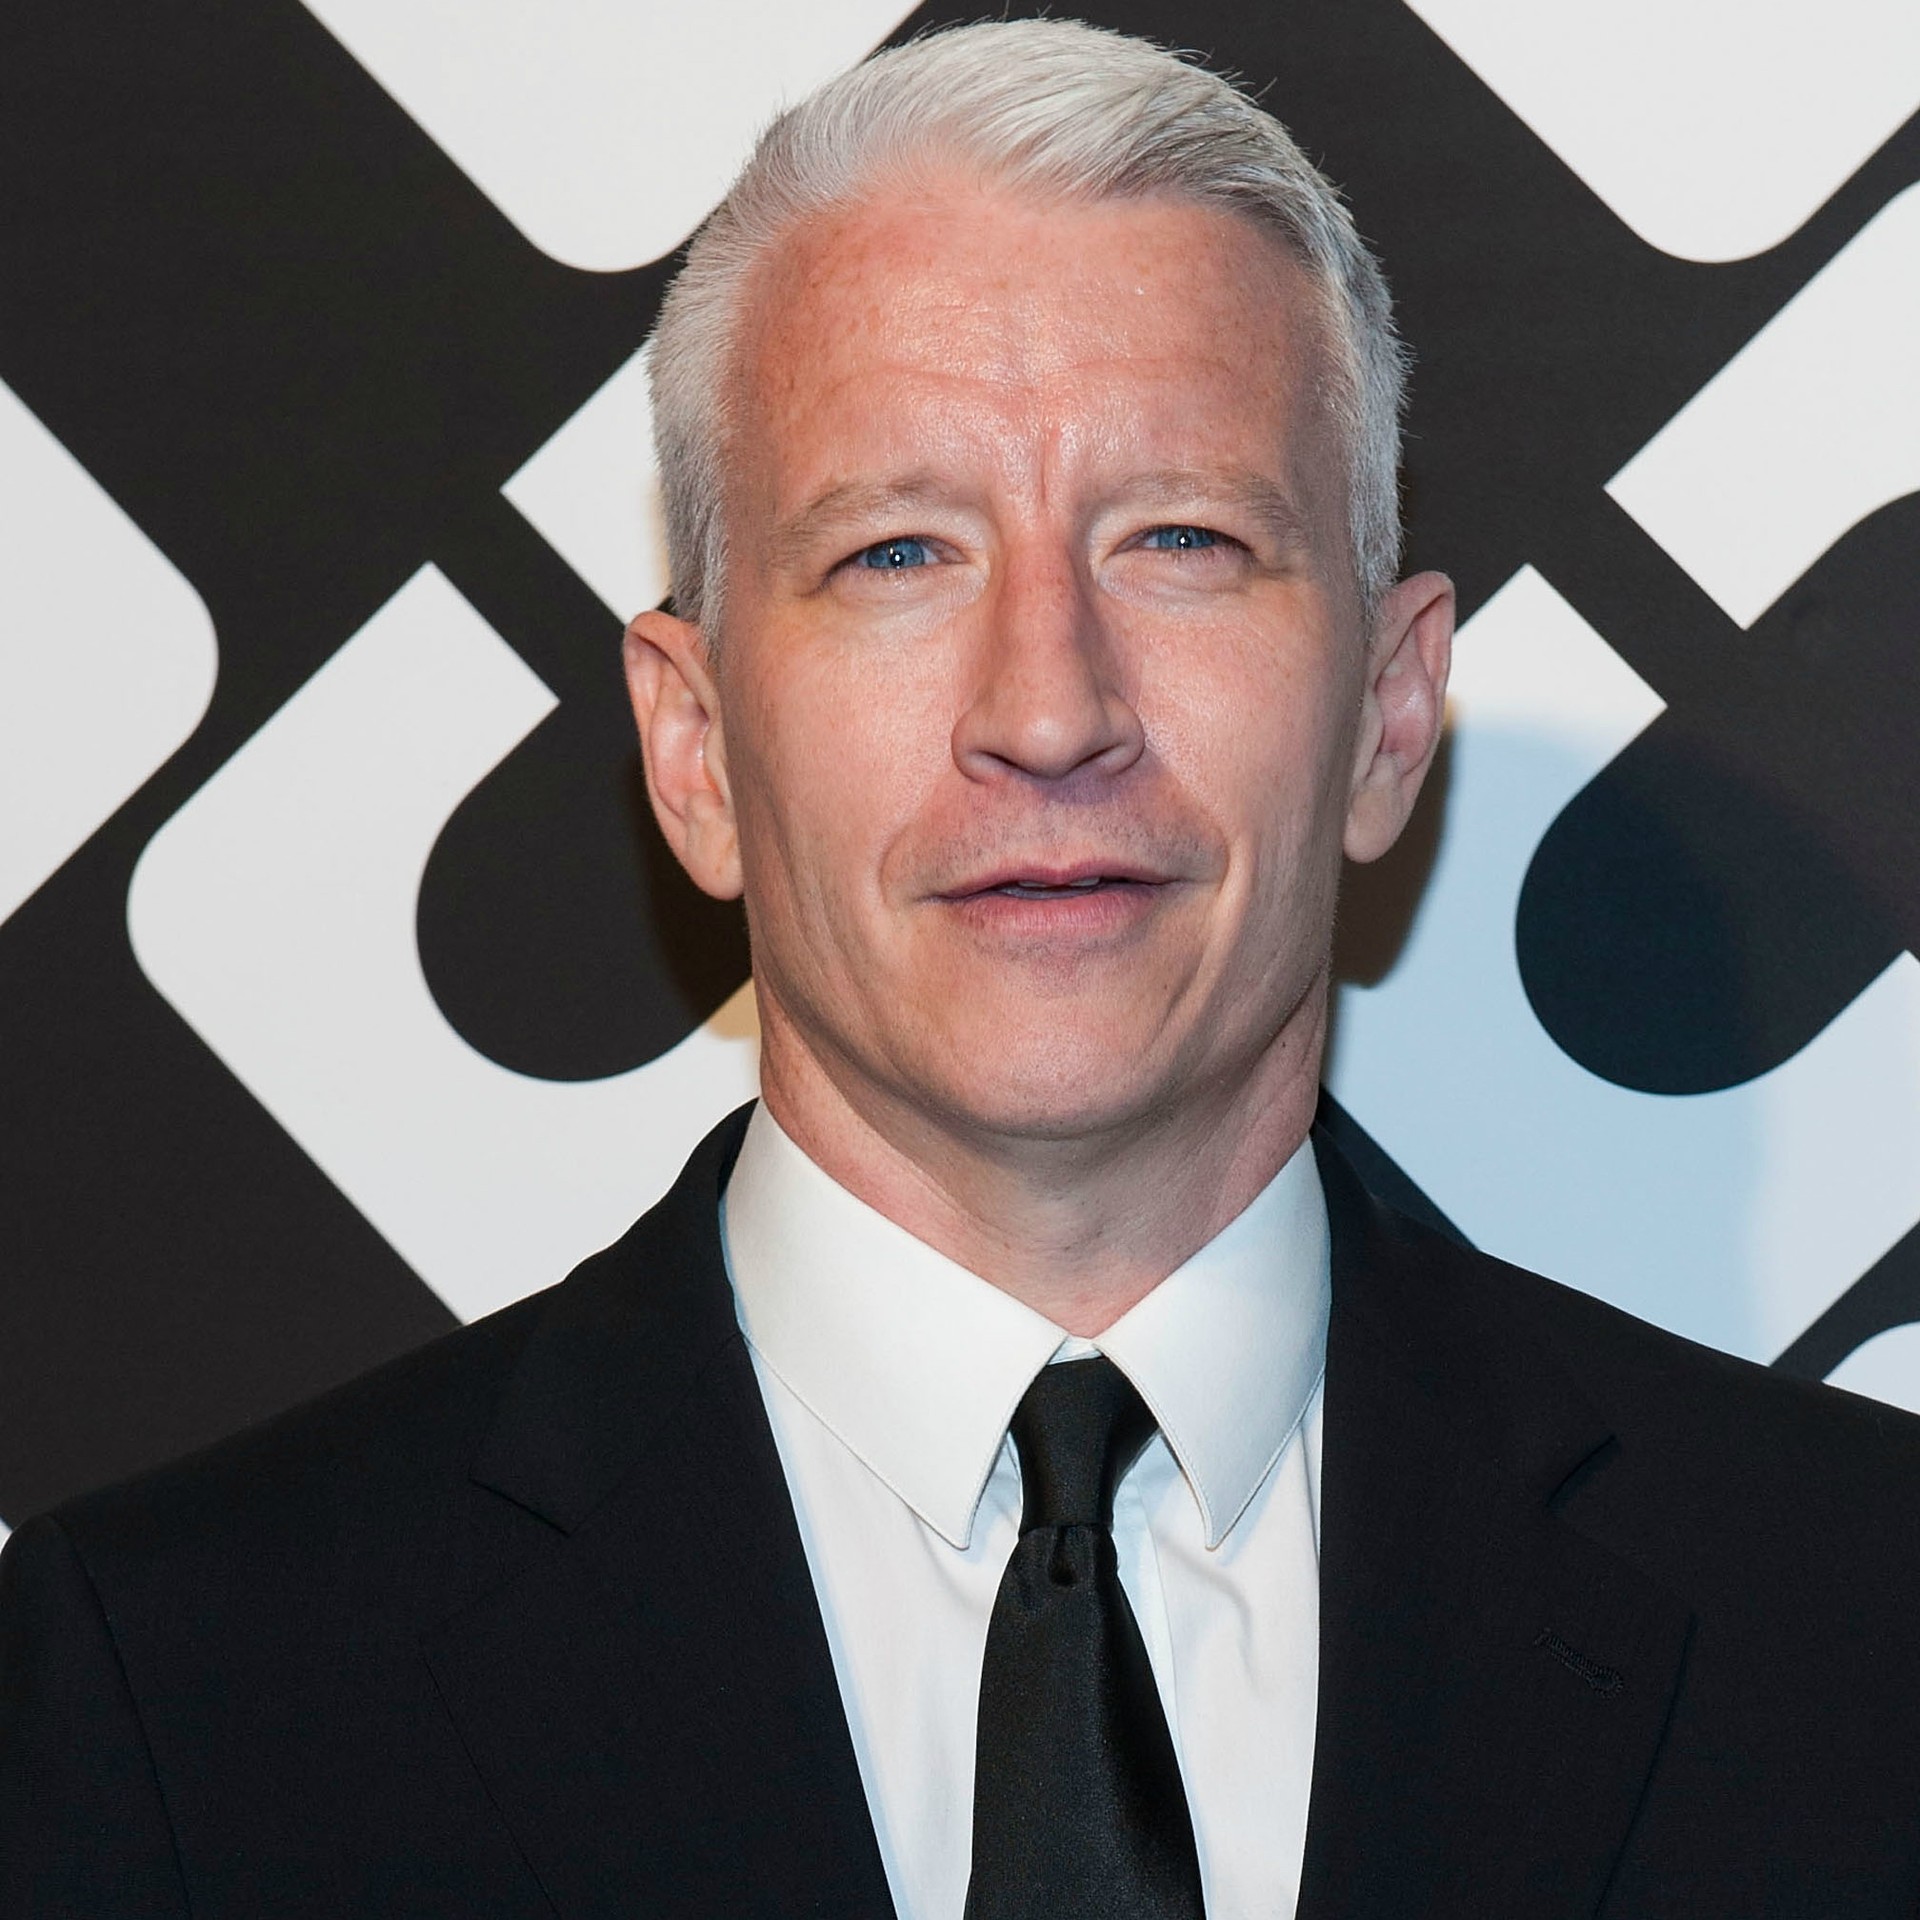 O jornalista Anderson Cooper, de 46 anos, saiu do armário em um e-mail enviado ao site 'The Daily Beast': "A verdade é: sou gay, sempre fui, sempre serei, e não poderia estar mais feliz, tranquilo comigo mesmo, e orgulhoso". (Foto: Getty Images)